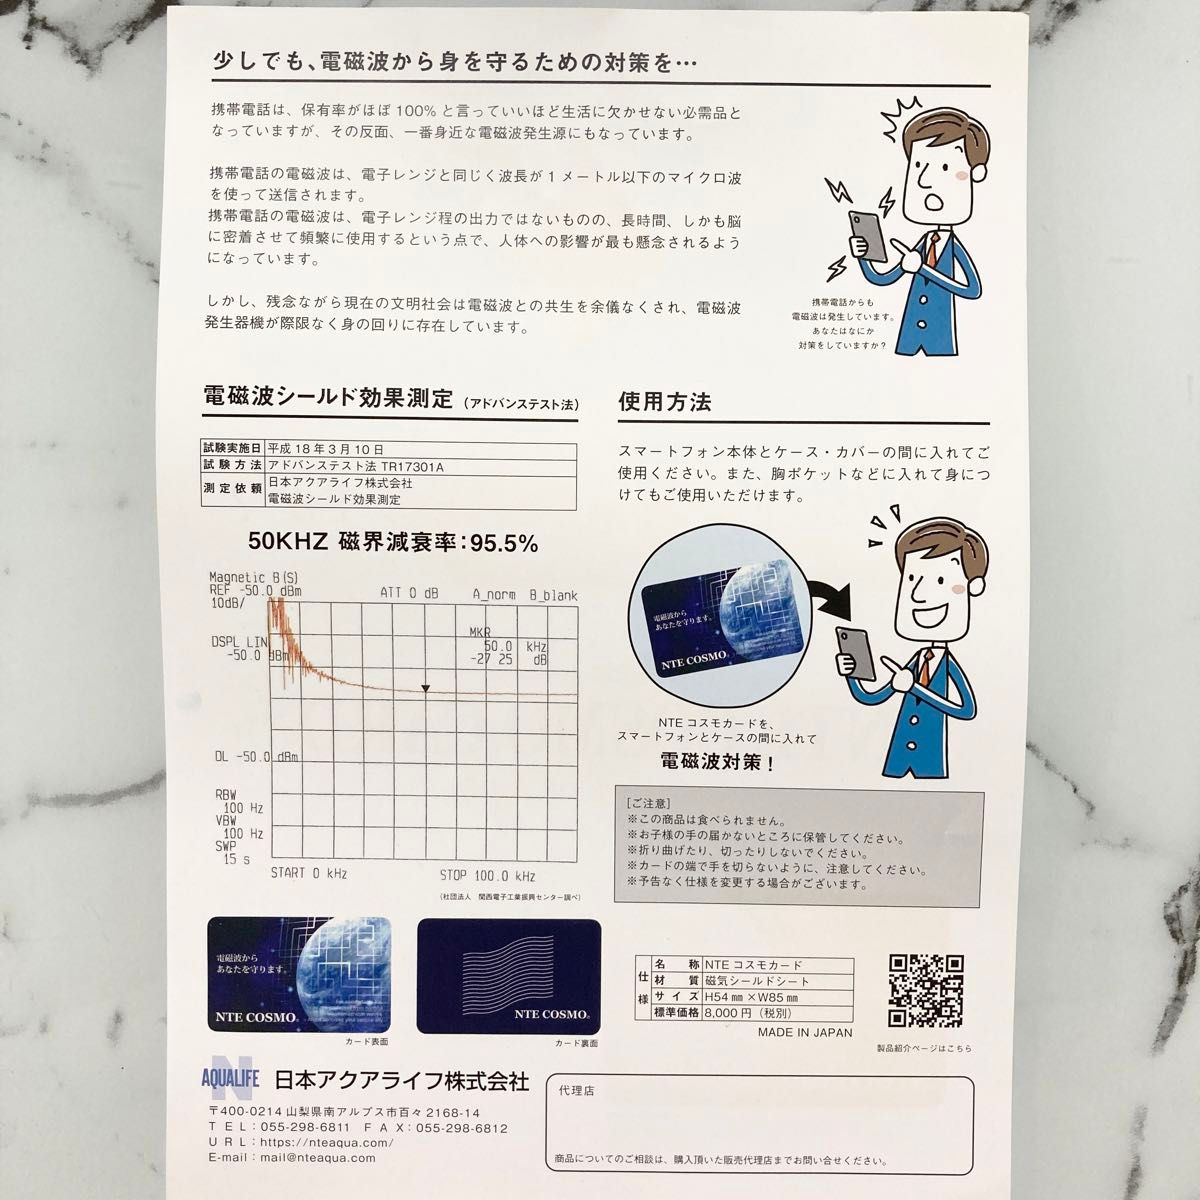 【新品】NTEコスモカード 電磁波カット